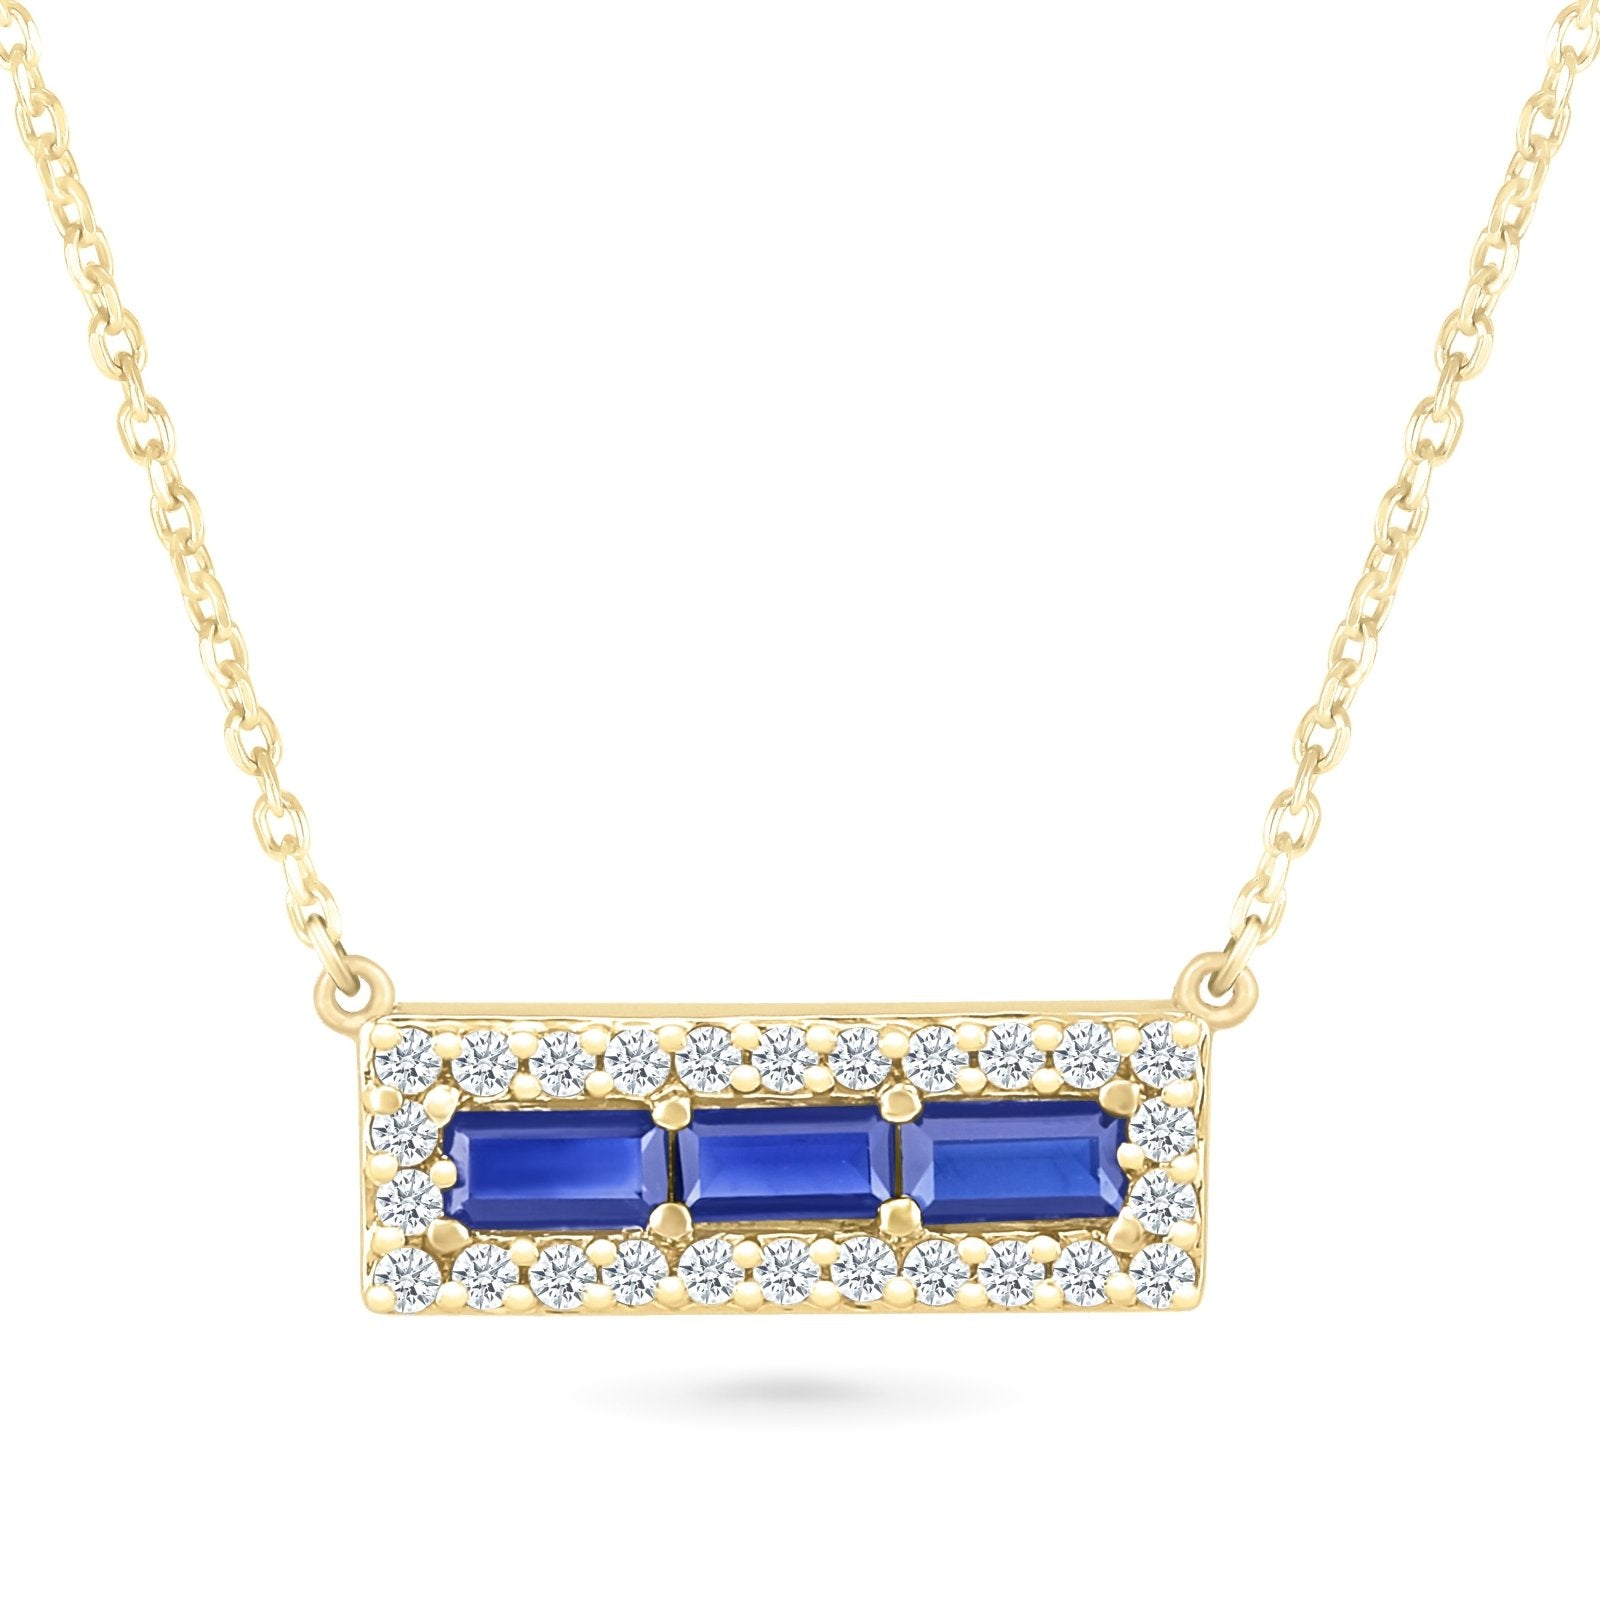 Blue and White Sapphire Bar Necklace Necklaces Estella Collection #product_description# 32709 10k Birthstone blue #tag4# #tag5# #tag6# #tag7# #tag8# #tag9# #tag10#